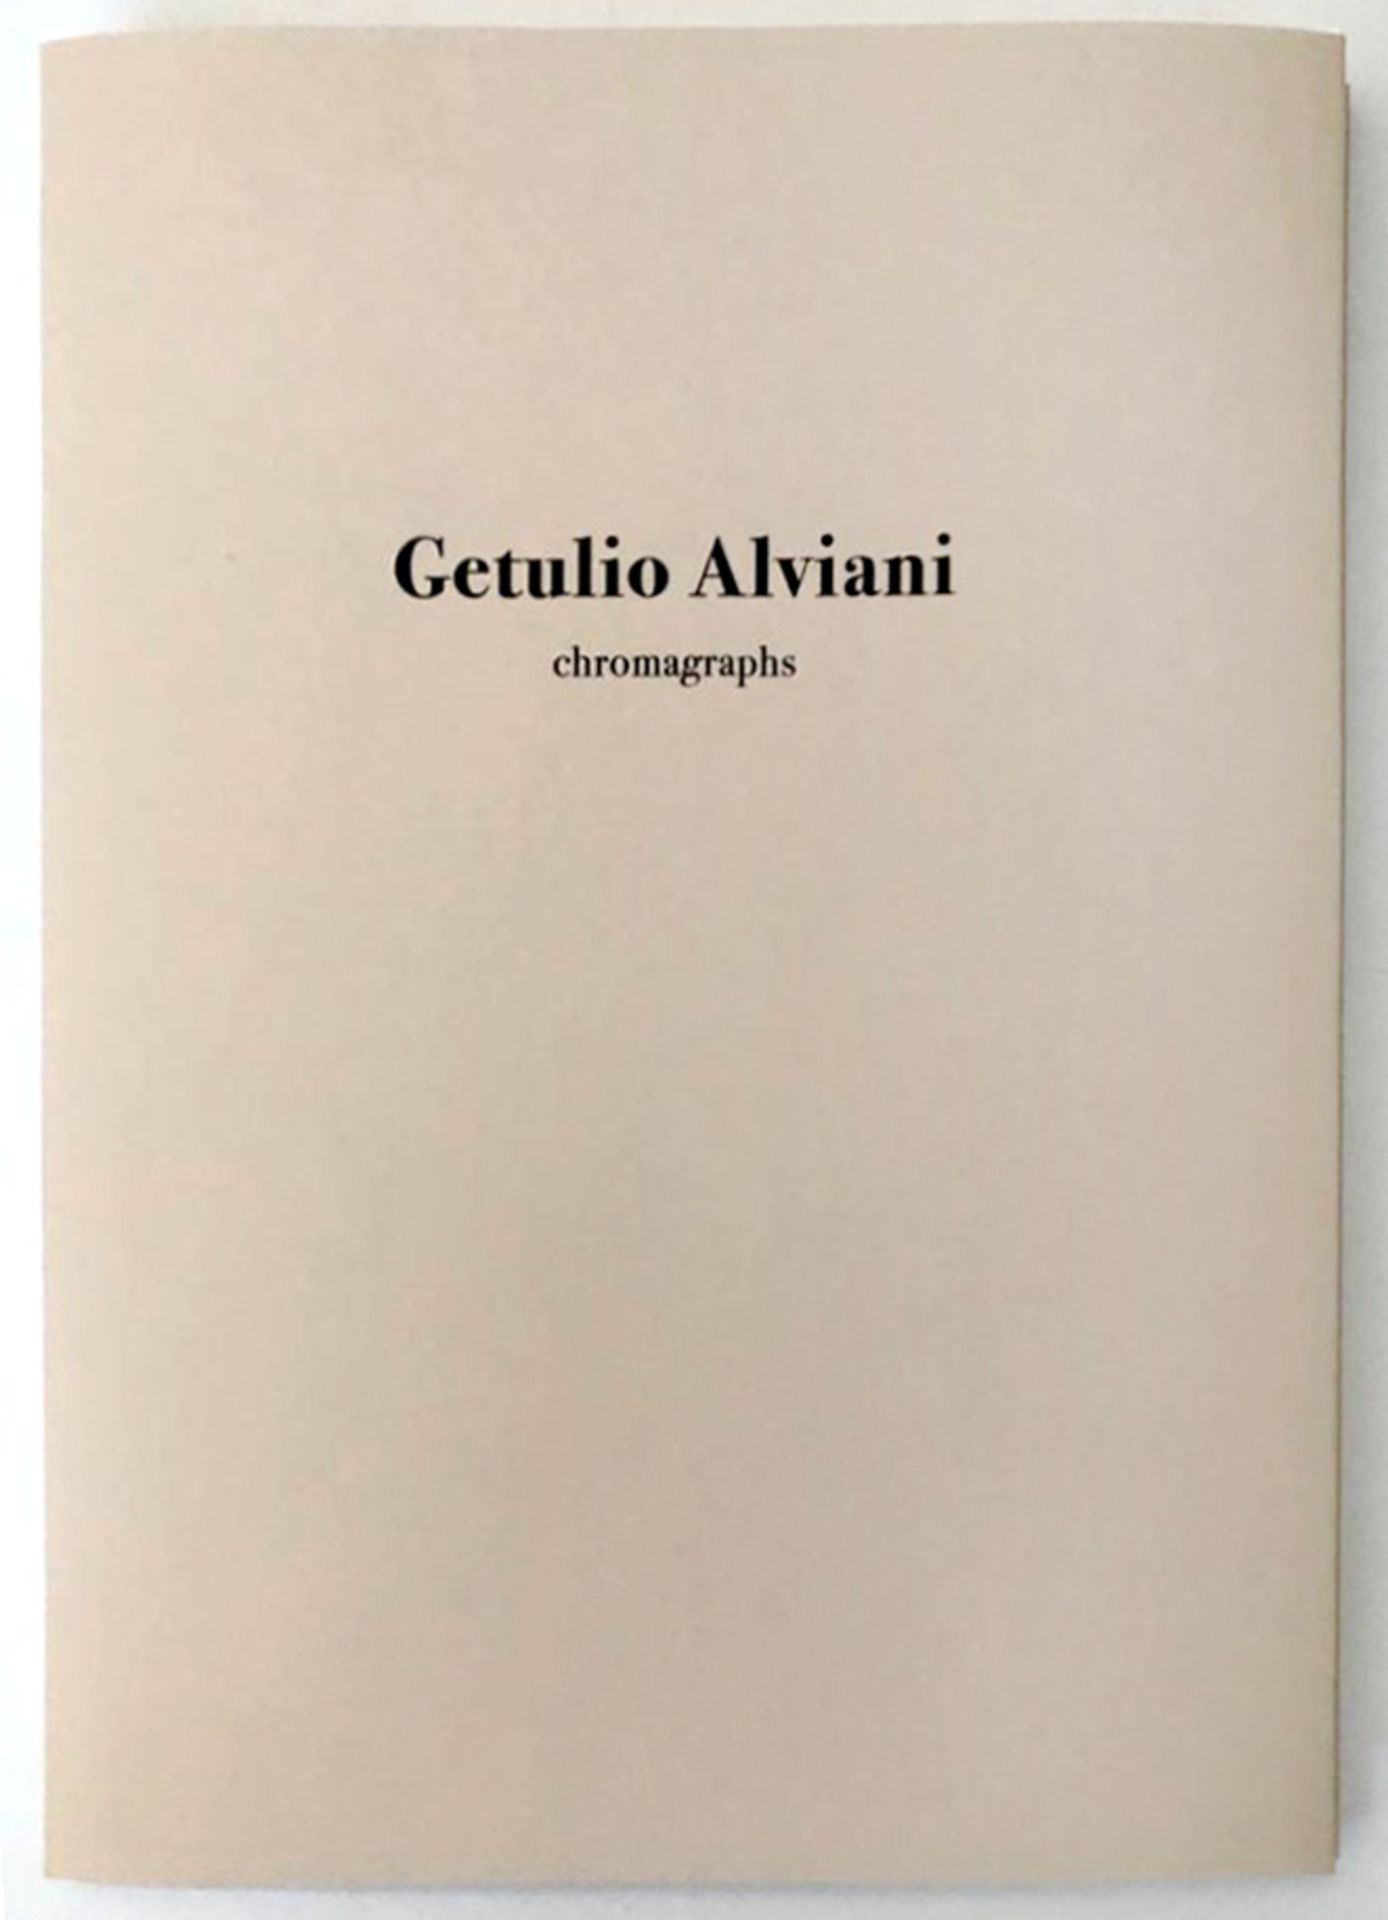 Getulio Alviani(1939-2018)"Chromographs"2000Siebdruck auf Papier; 5 Drucke in Mappe